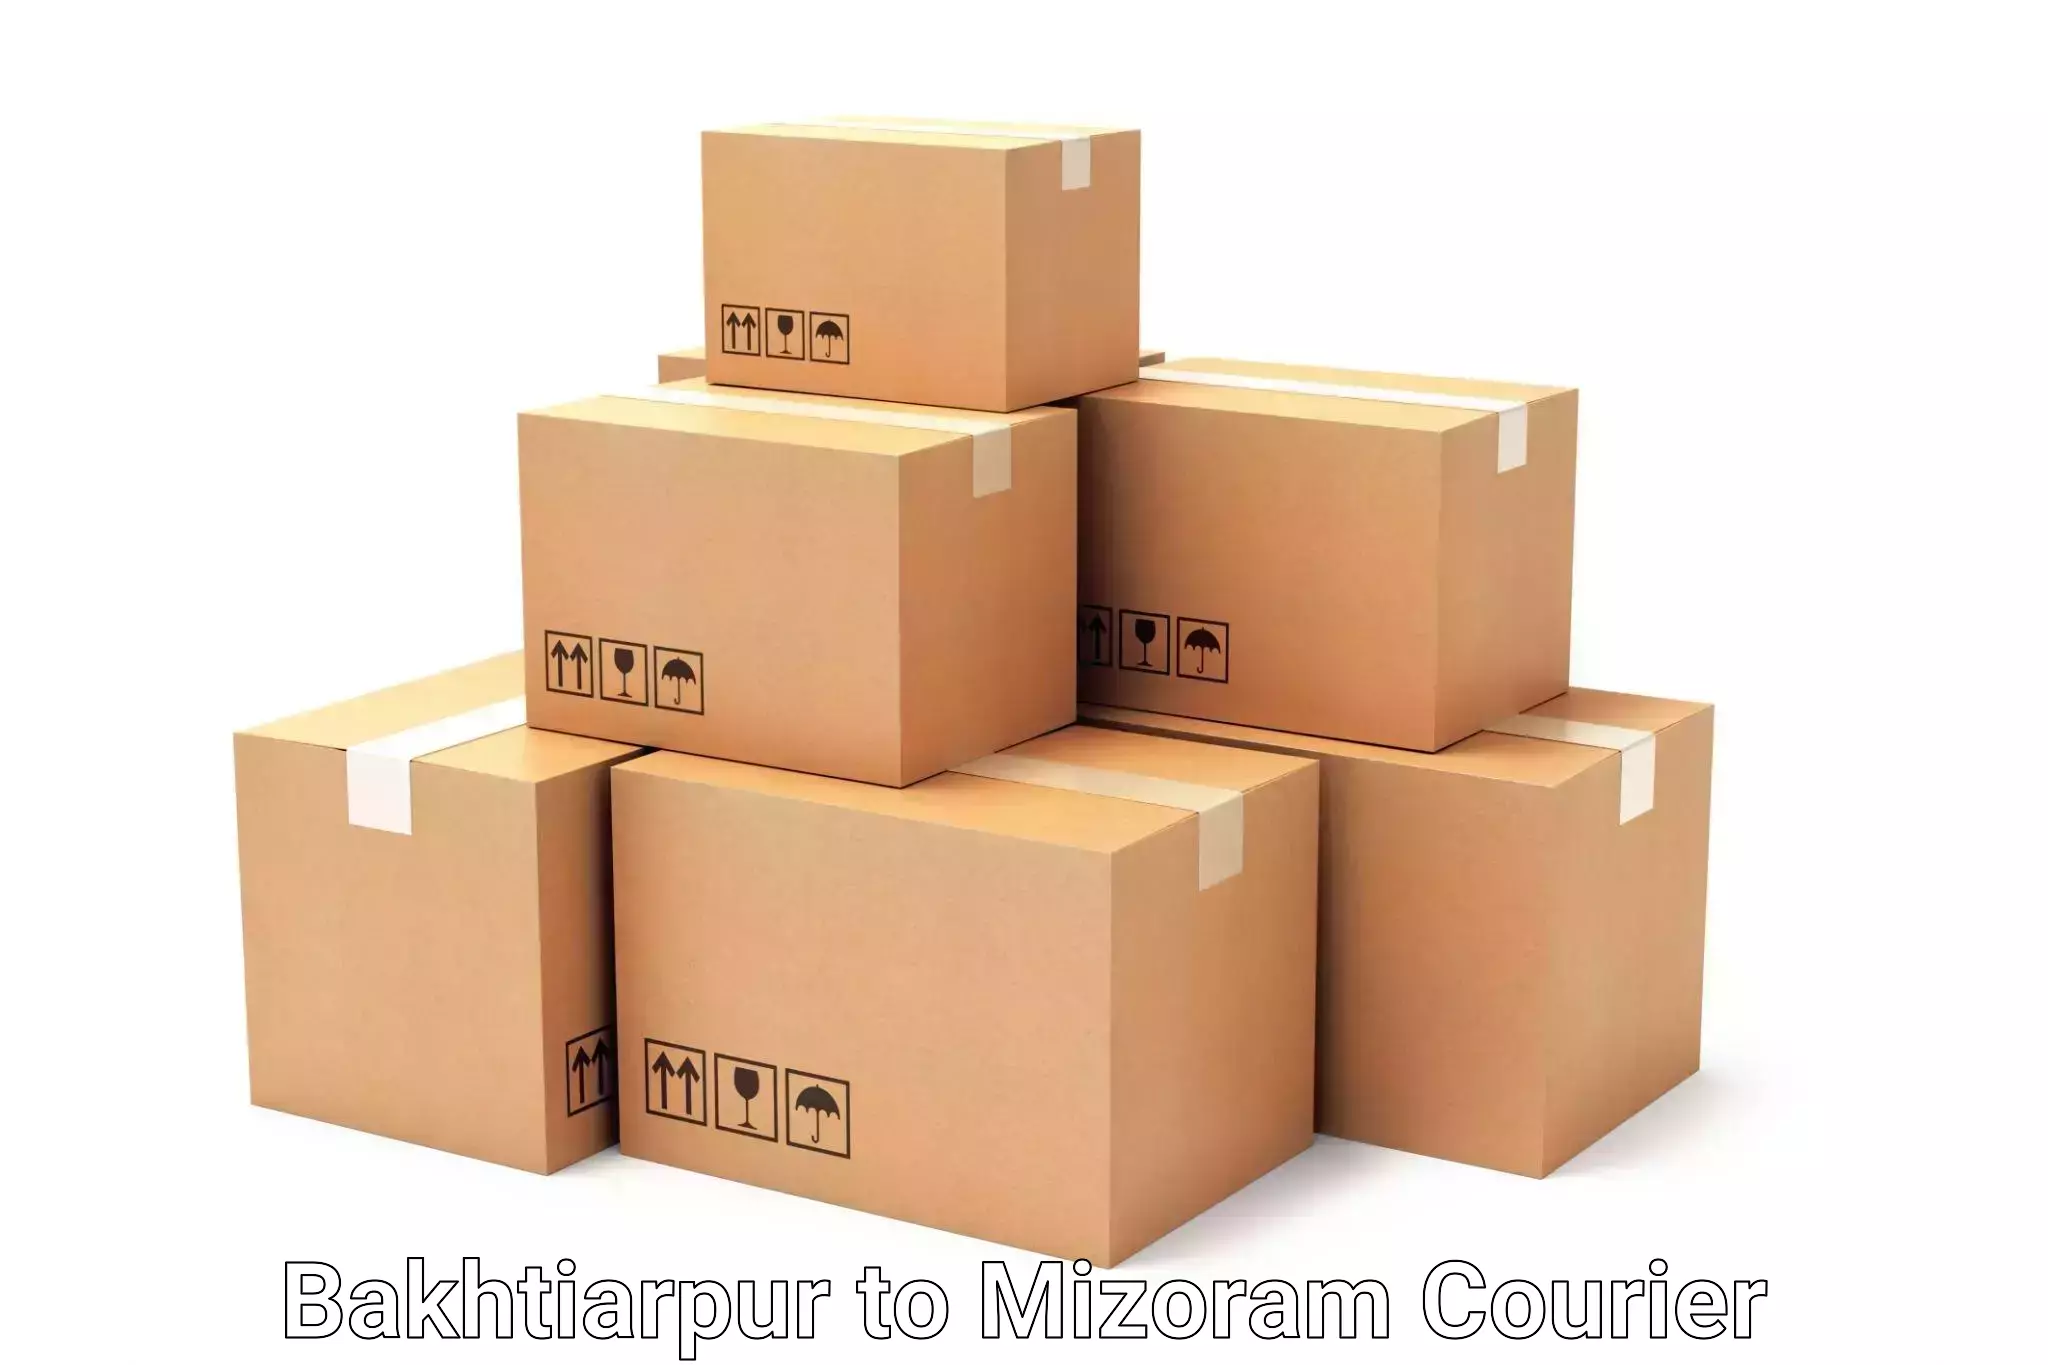 Luggage delivery logistics Bakhtiarpur to Khawzawl